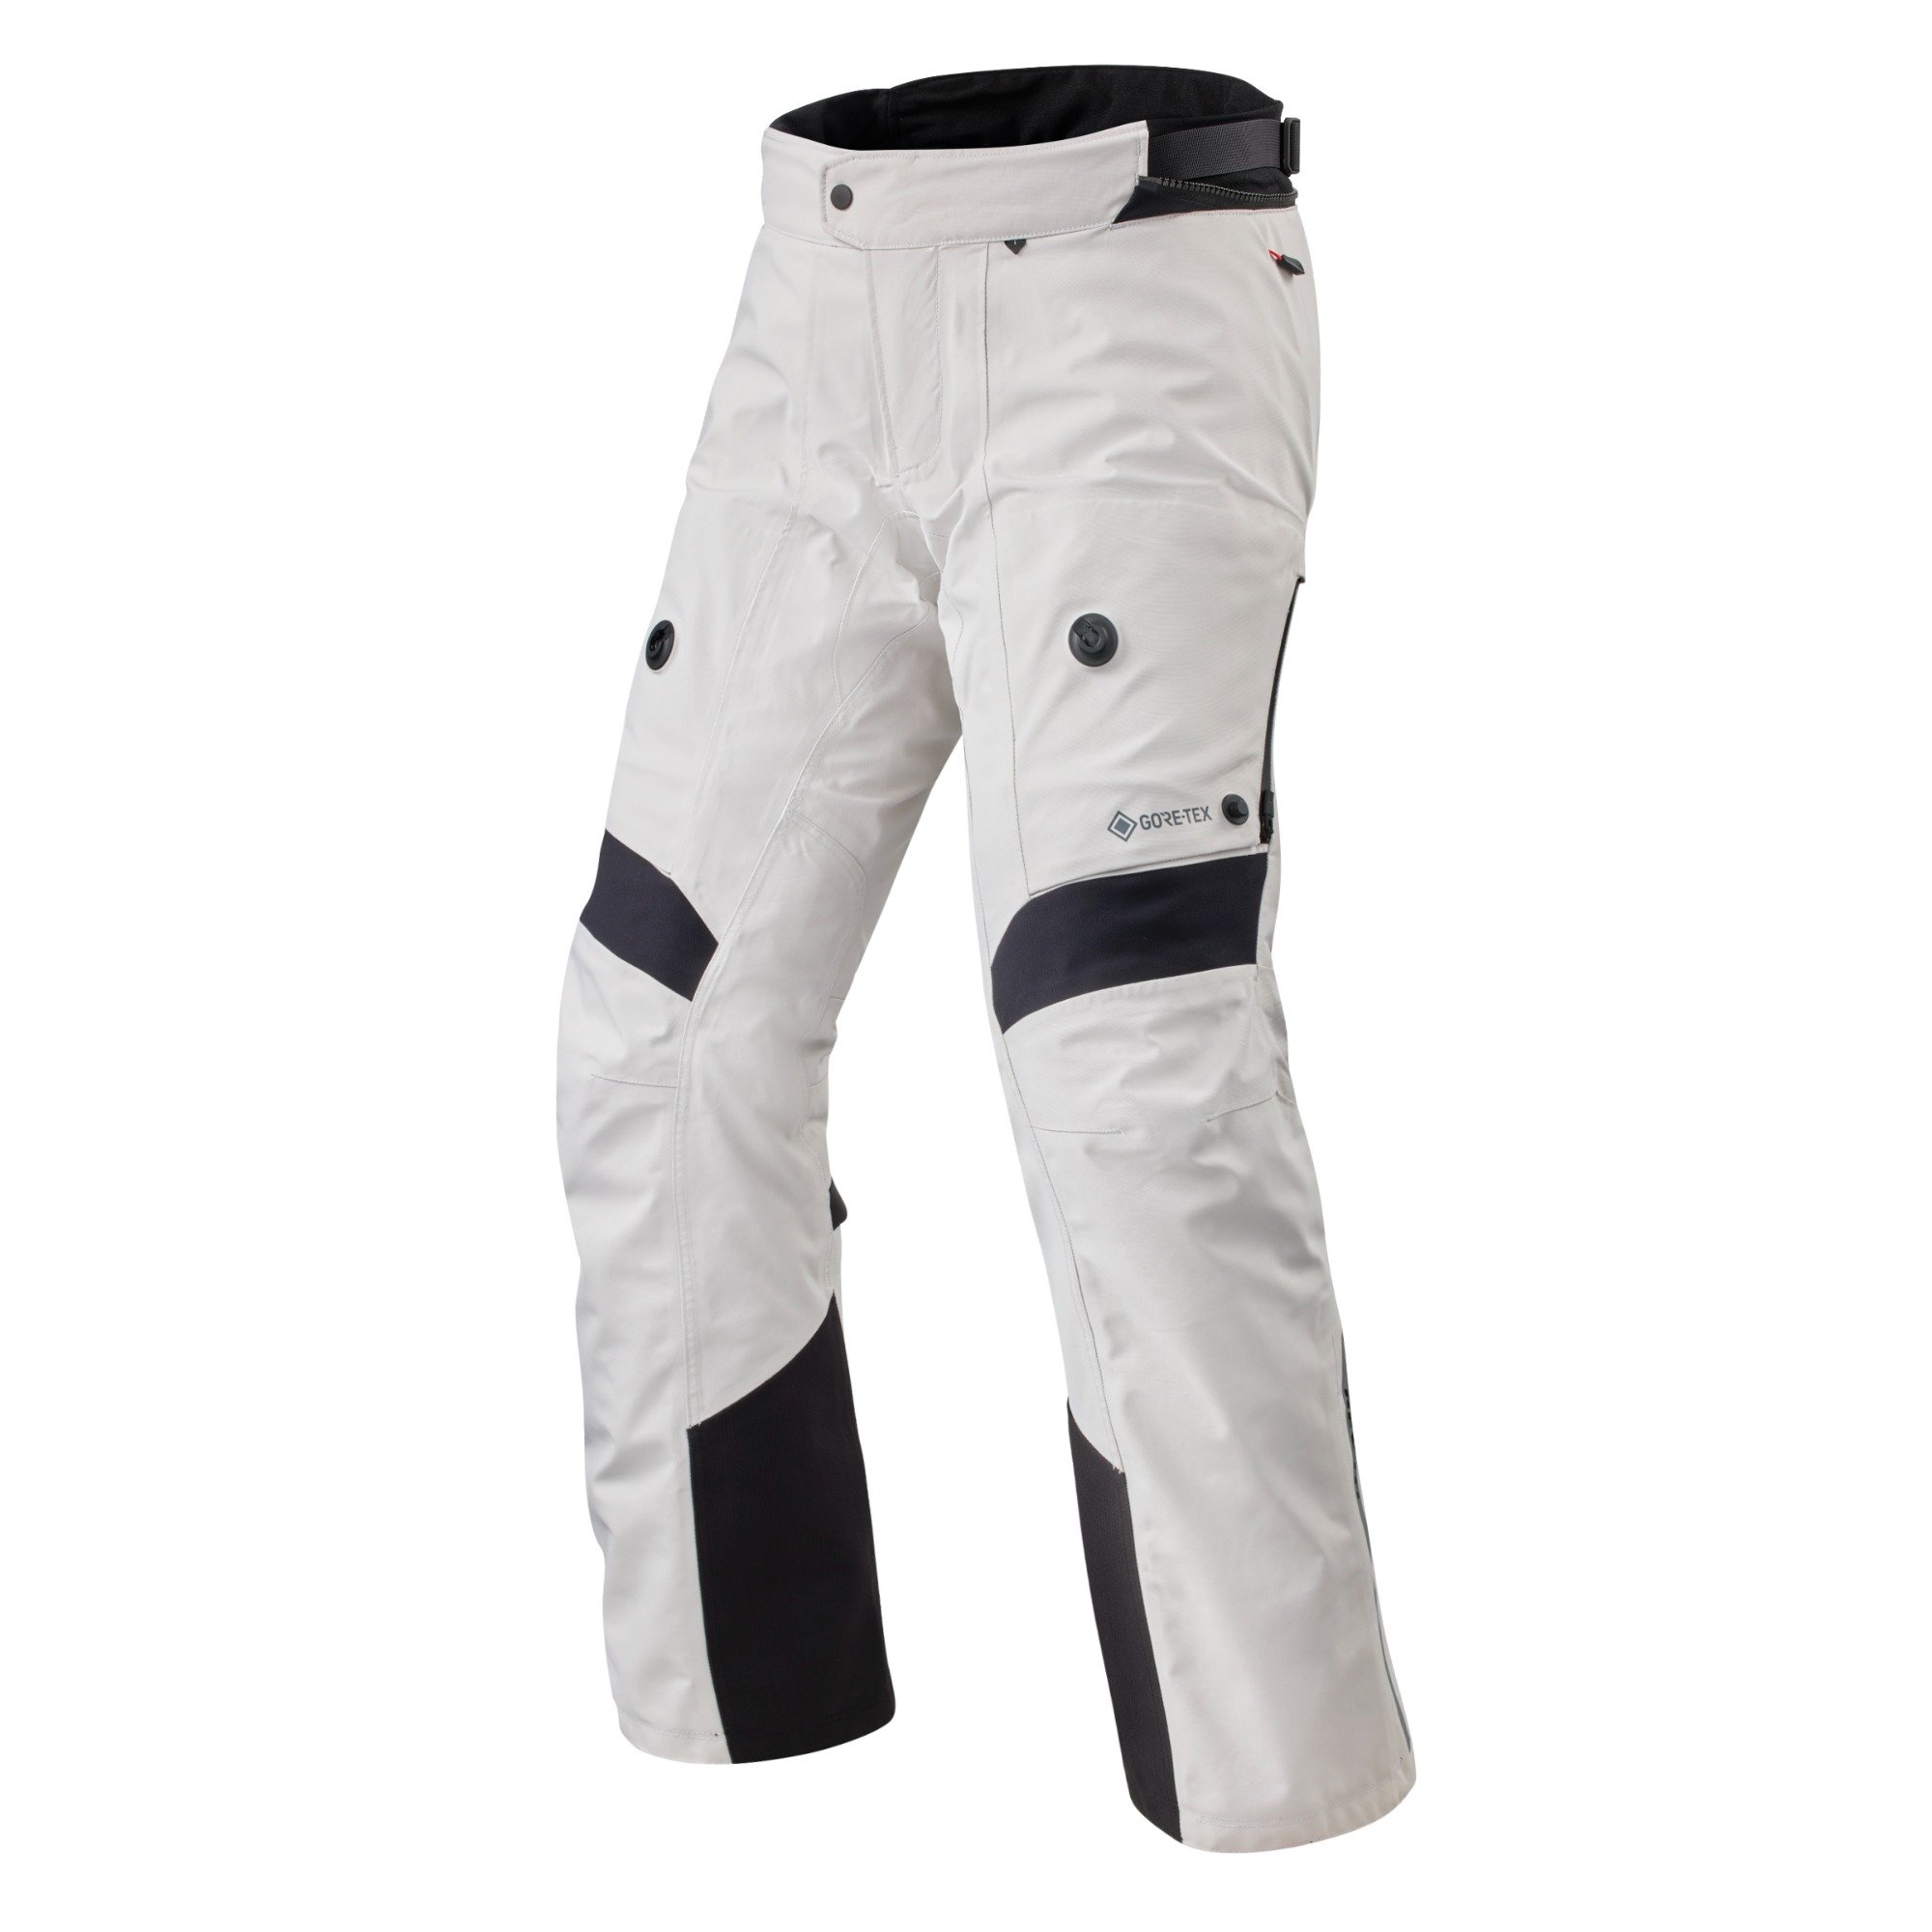 Image of REV'IT! Pants Poseidon 3 GTX Silver Black Long Motorcycle Pants Size L EN